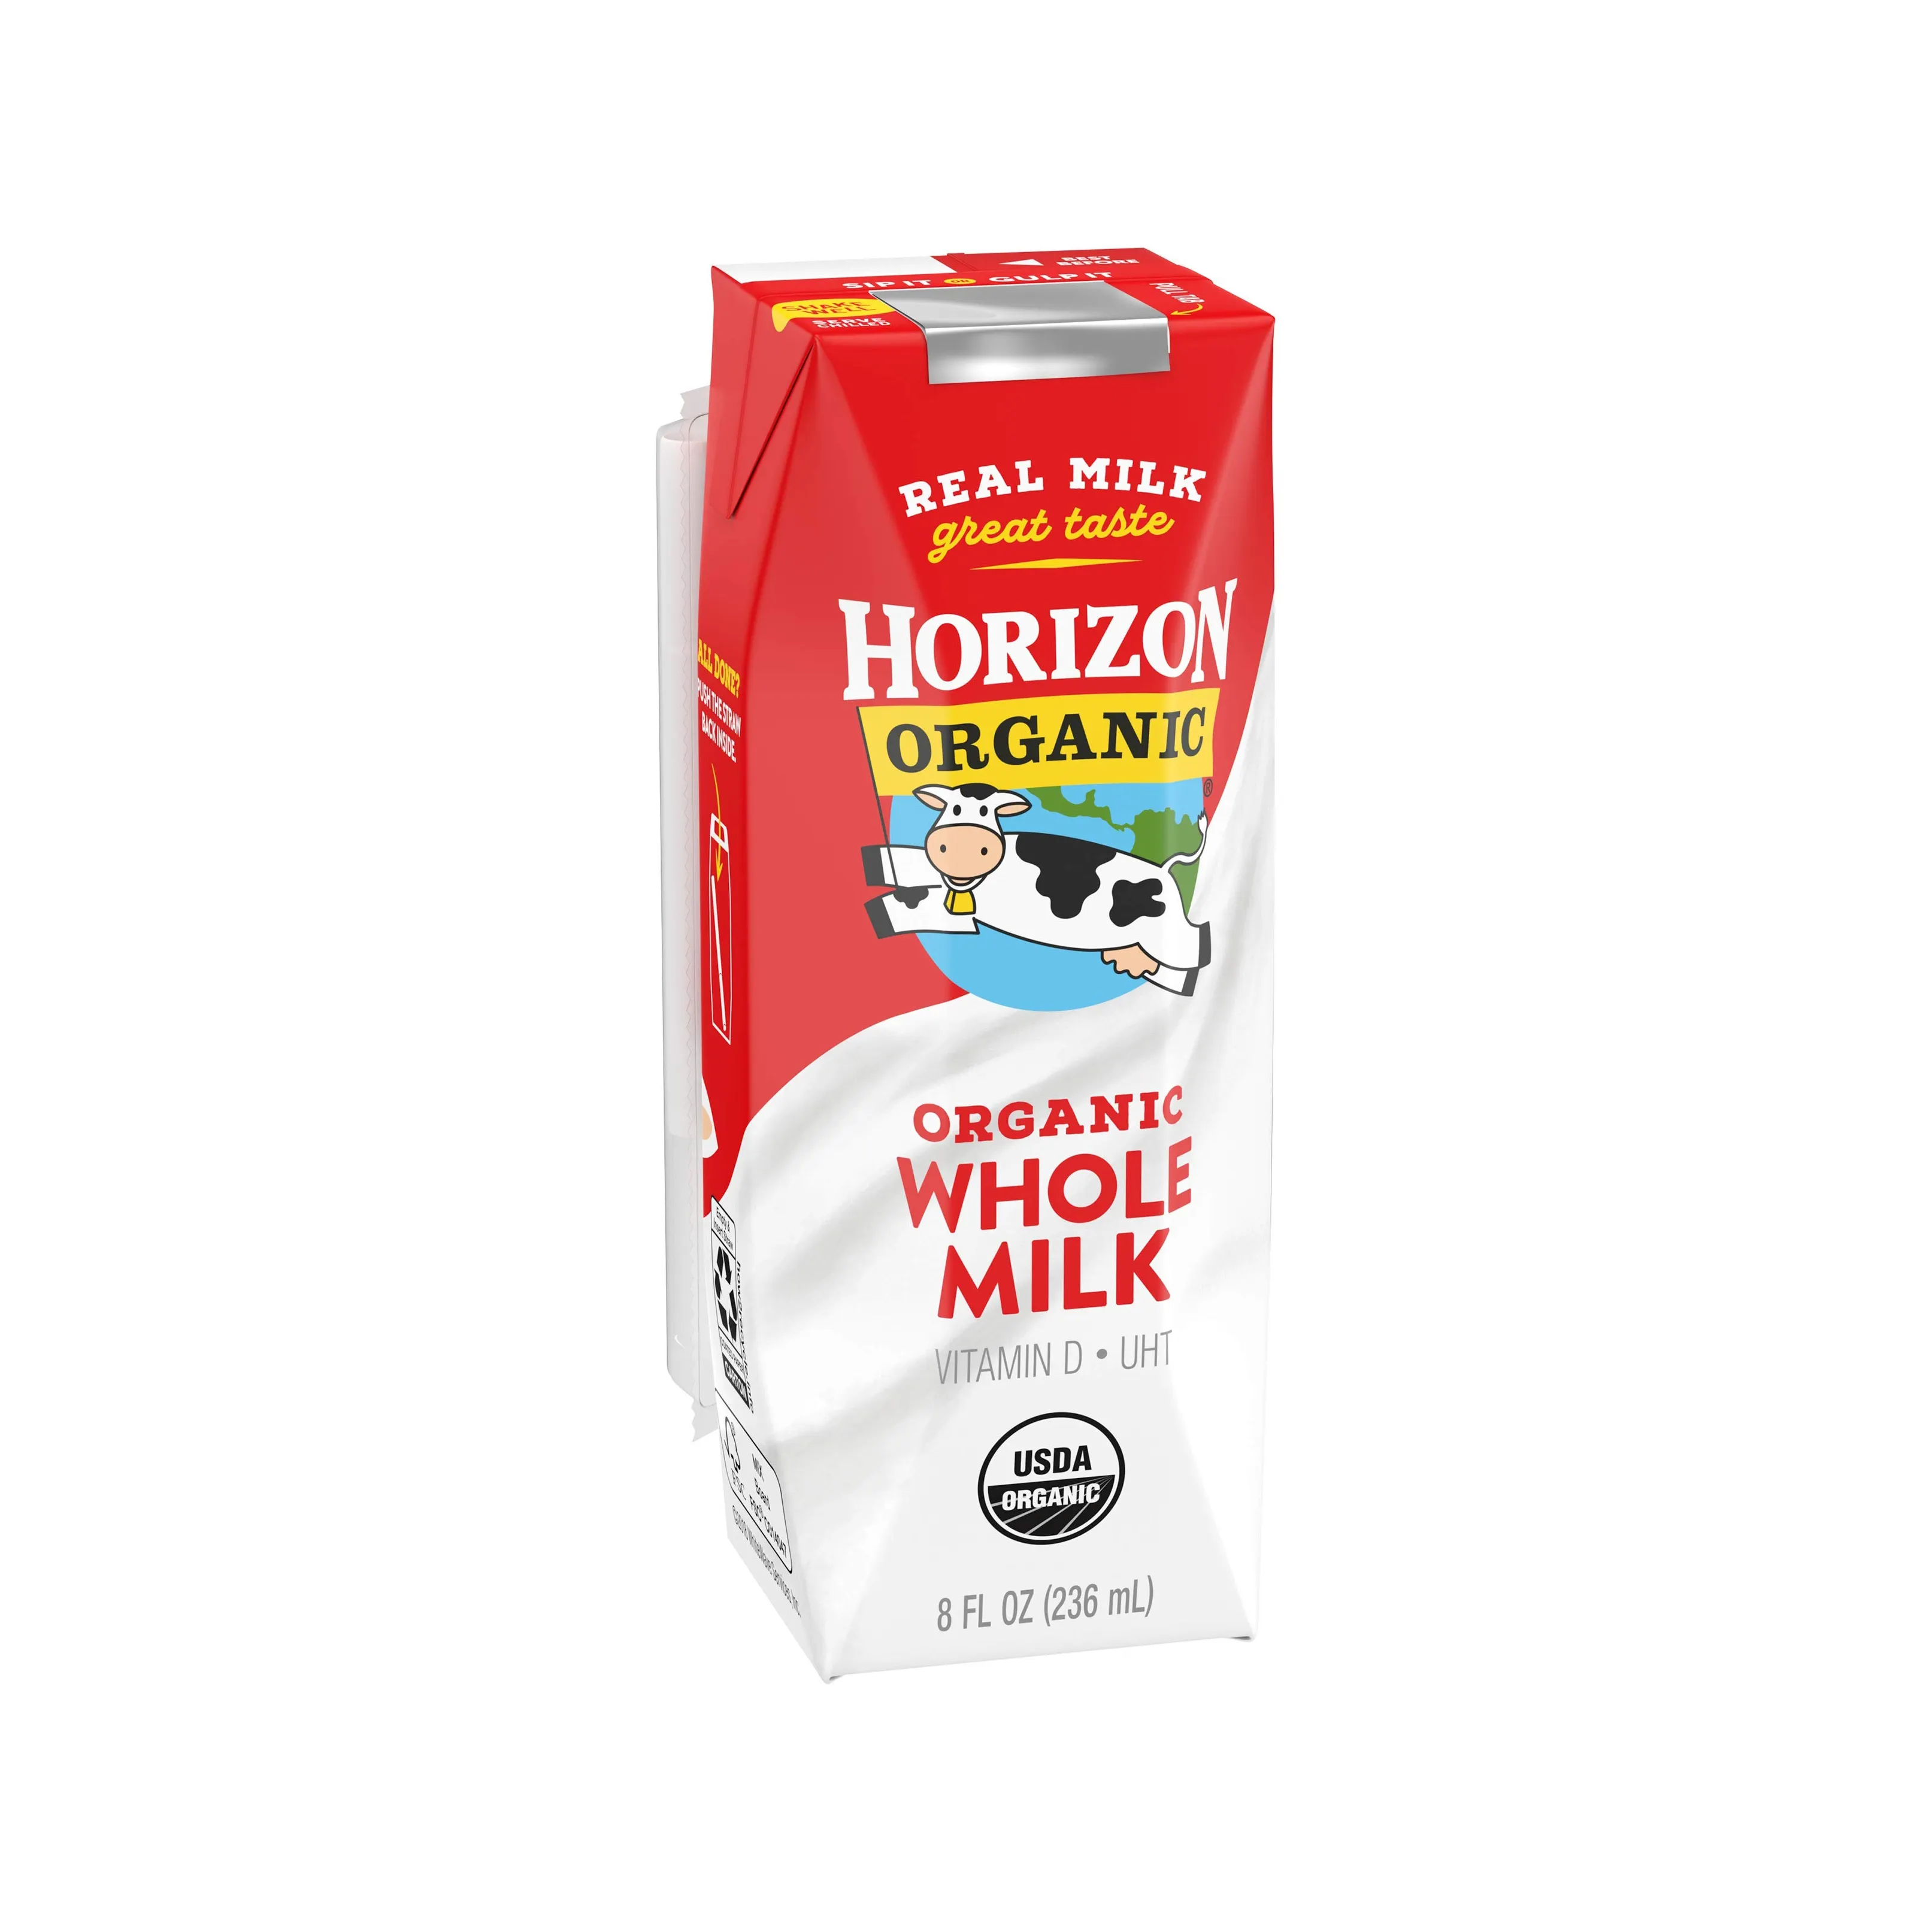 Horizon Organic Shelf-Stable 1% Cajas de leche baja en grasa con DHA Omega-3, vainilla, 8 floz, 6 unidades (paquete de 3)